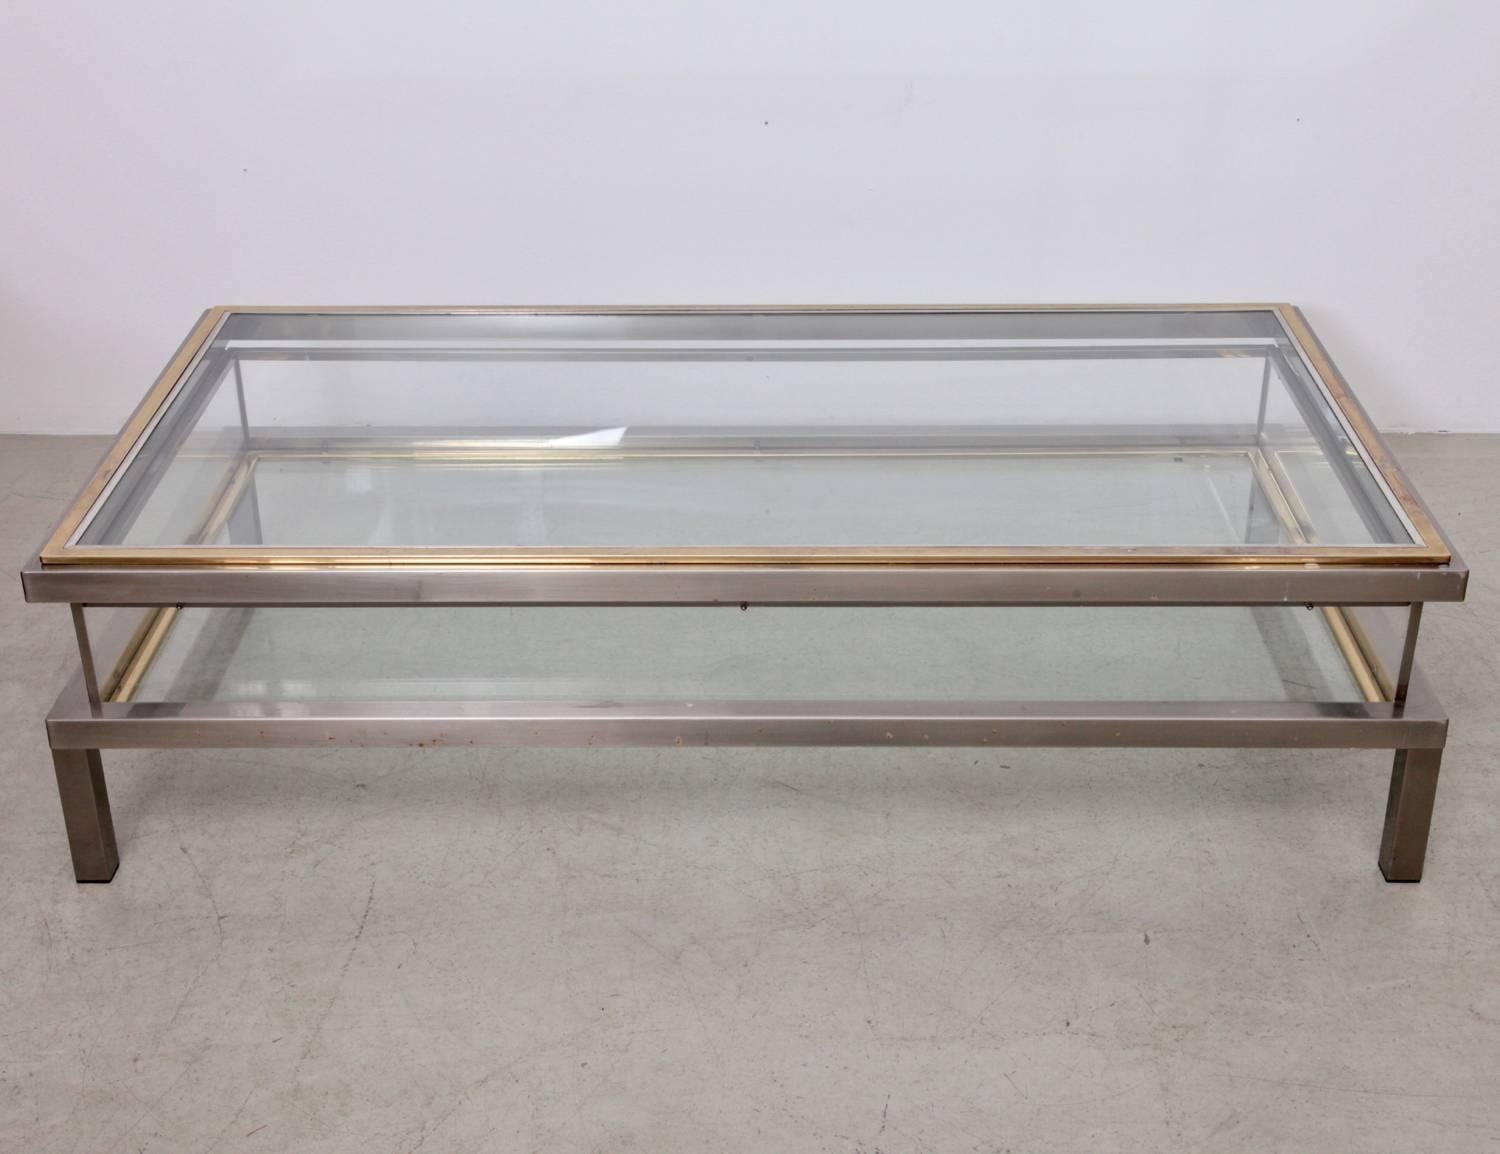 Länglicher Glastisch mit Schiebeplatte von Maison Jansen. Der Rahmen ist aus vergoldetem und verchromtem Metall gefertigt.

